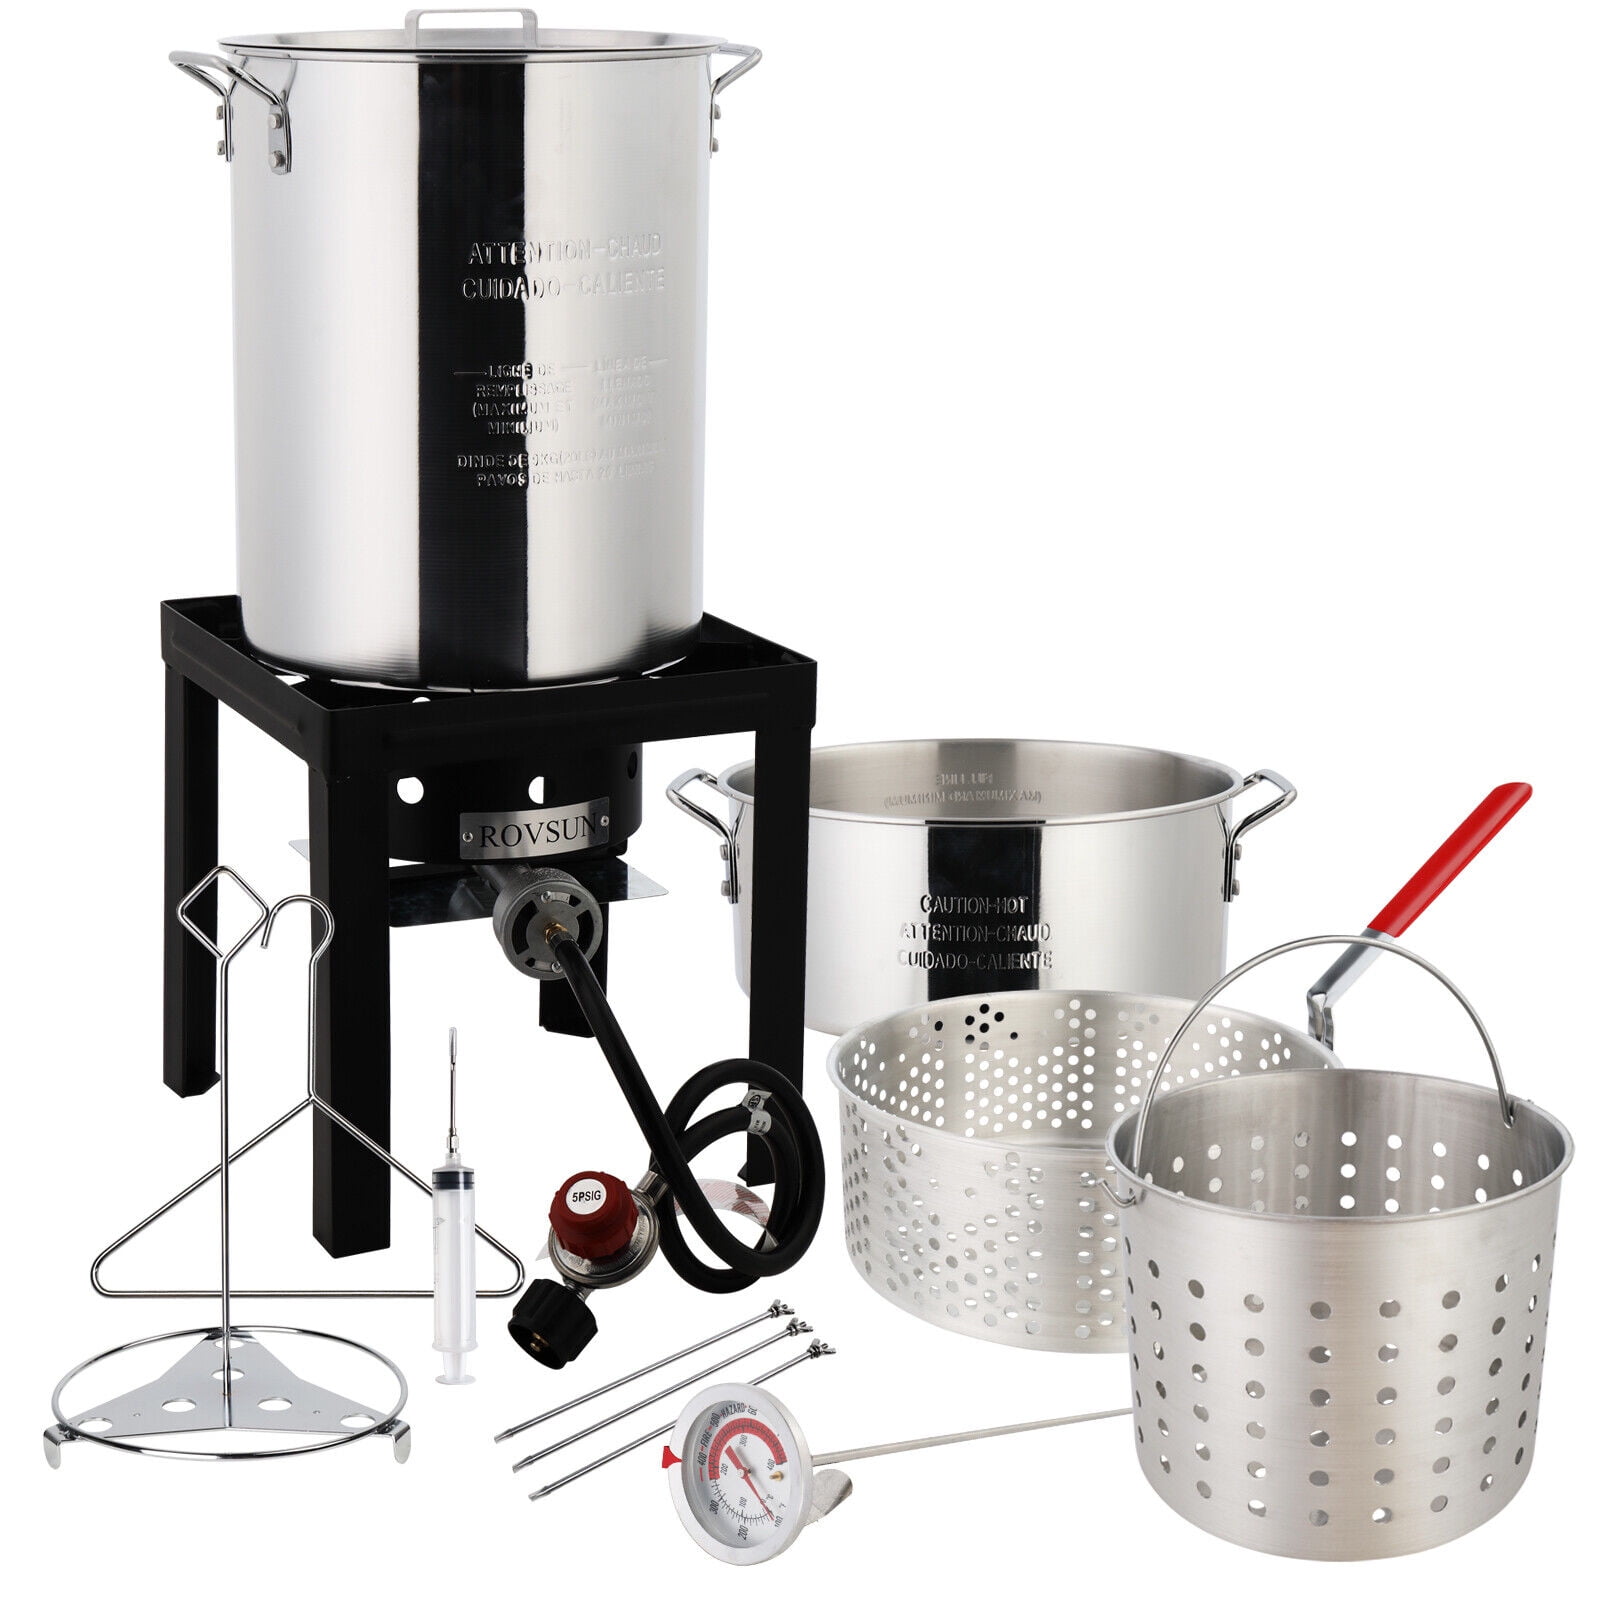 GasOne Turkey Fryer 30 QT Cooker Set and 10 QT Fish Fryer Craw Fish Boiler  Steamer Complete Set,Black